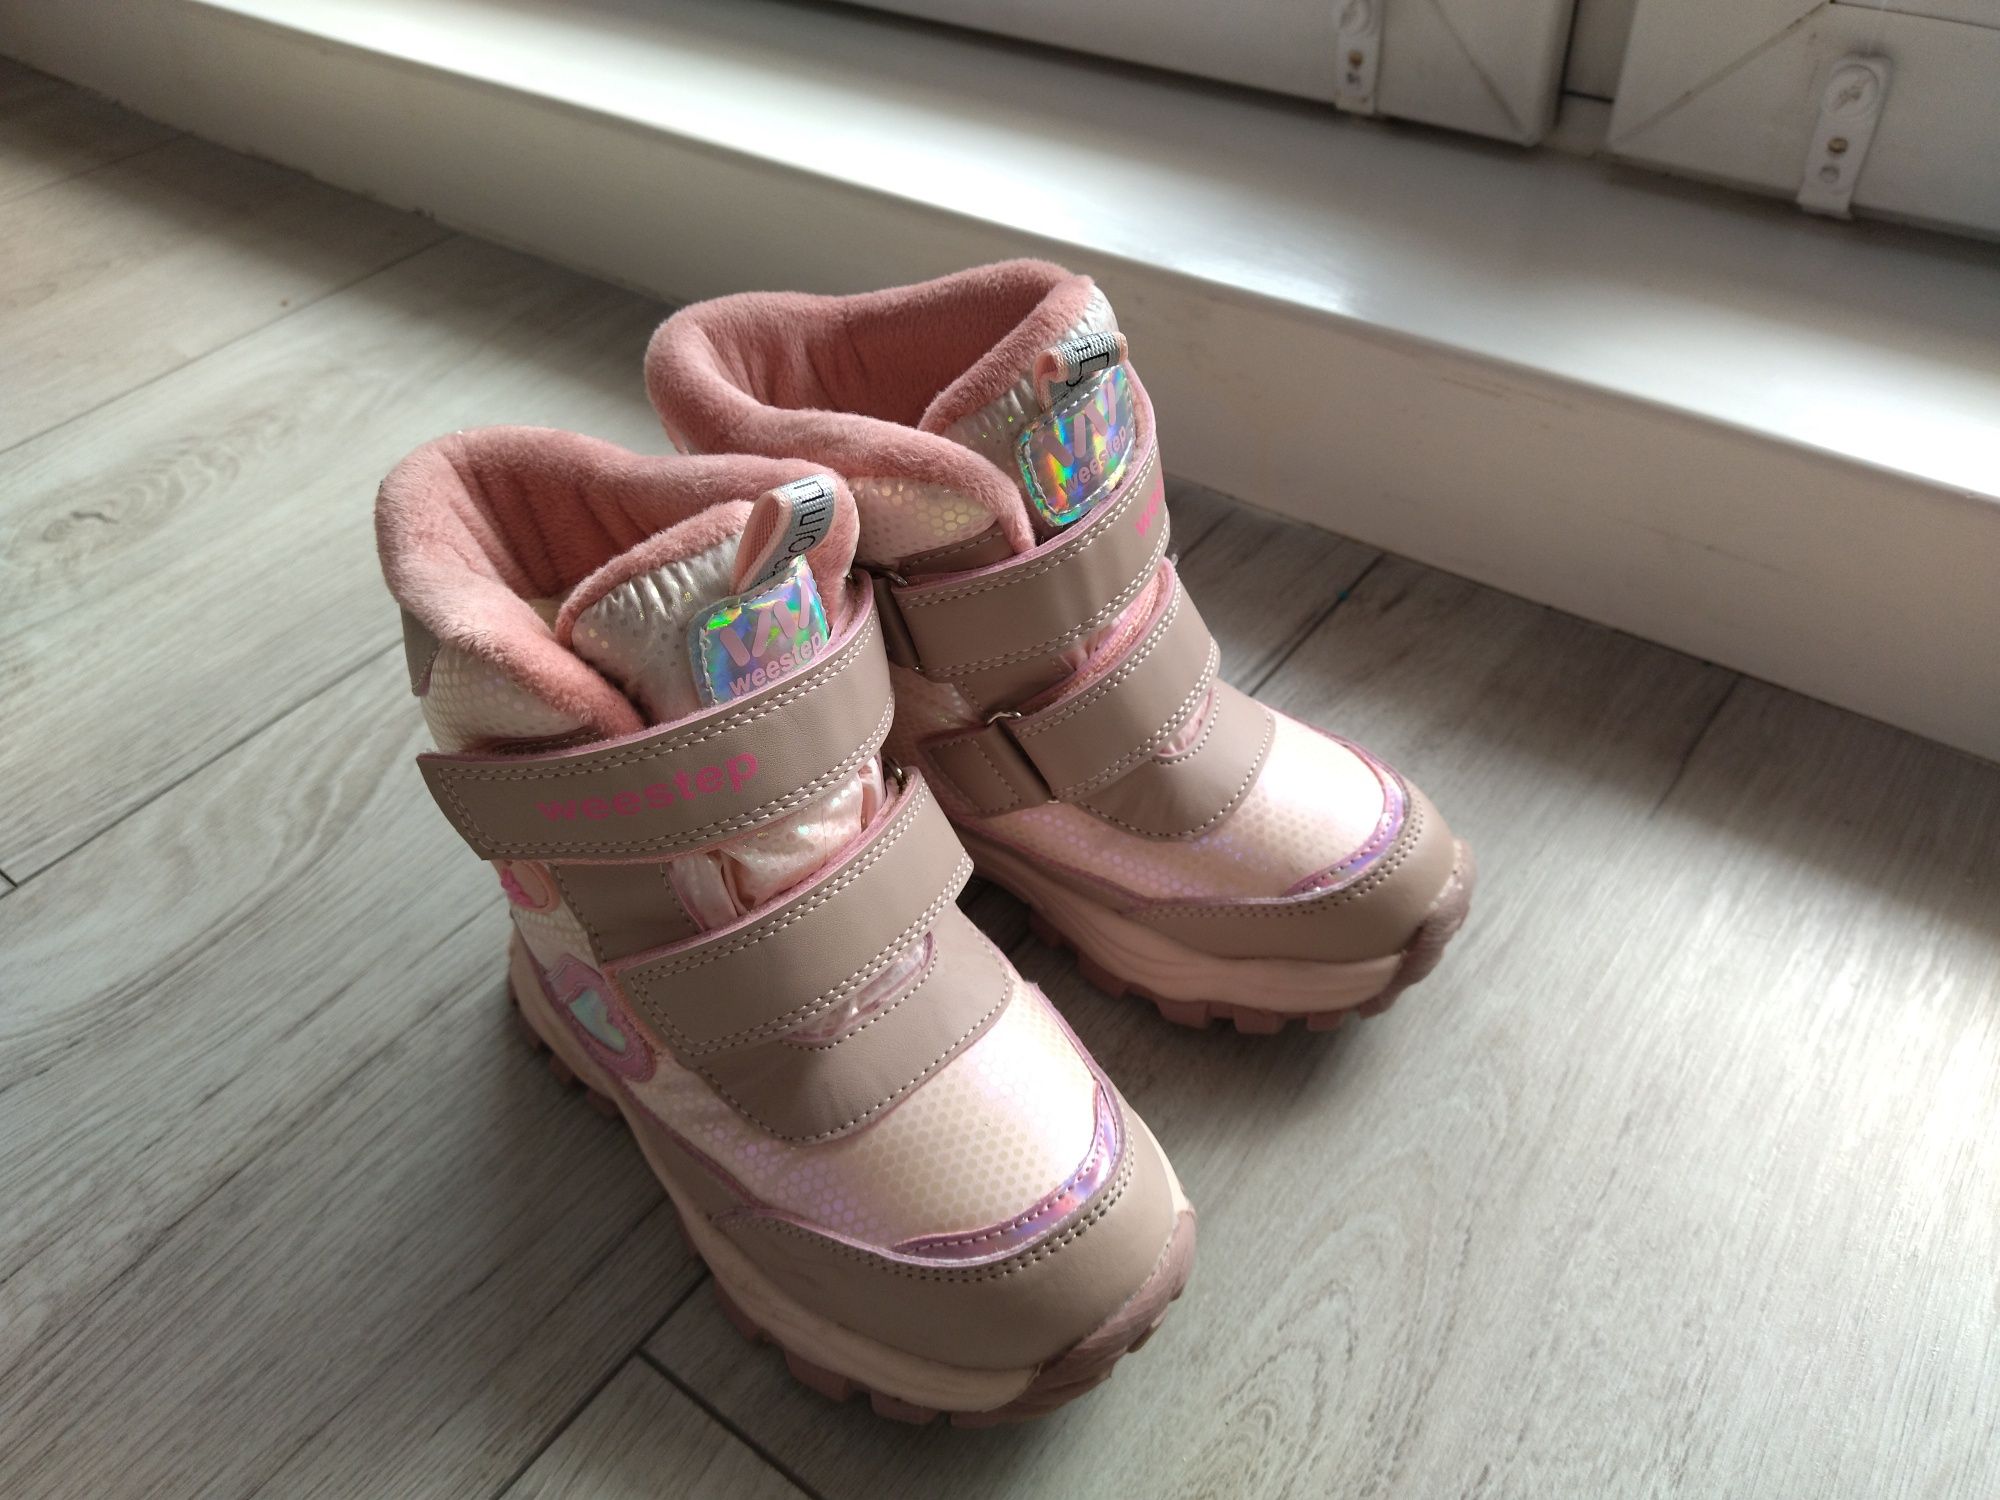 Sprzedam buty zimowe śniegowce Weestep r. 26 dł. wkładki 16,5 cm